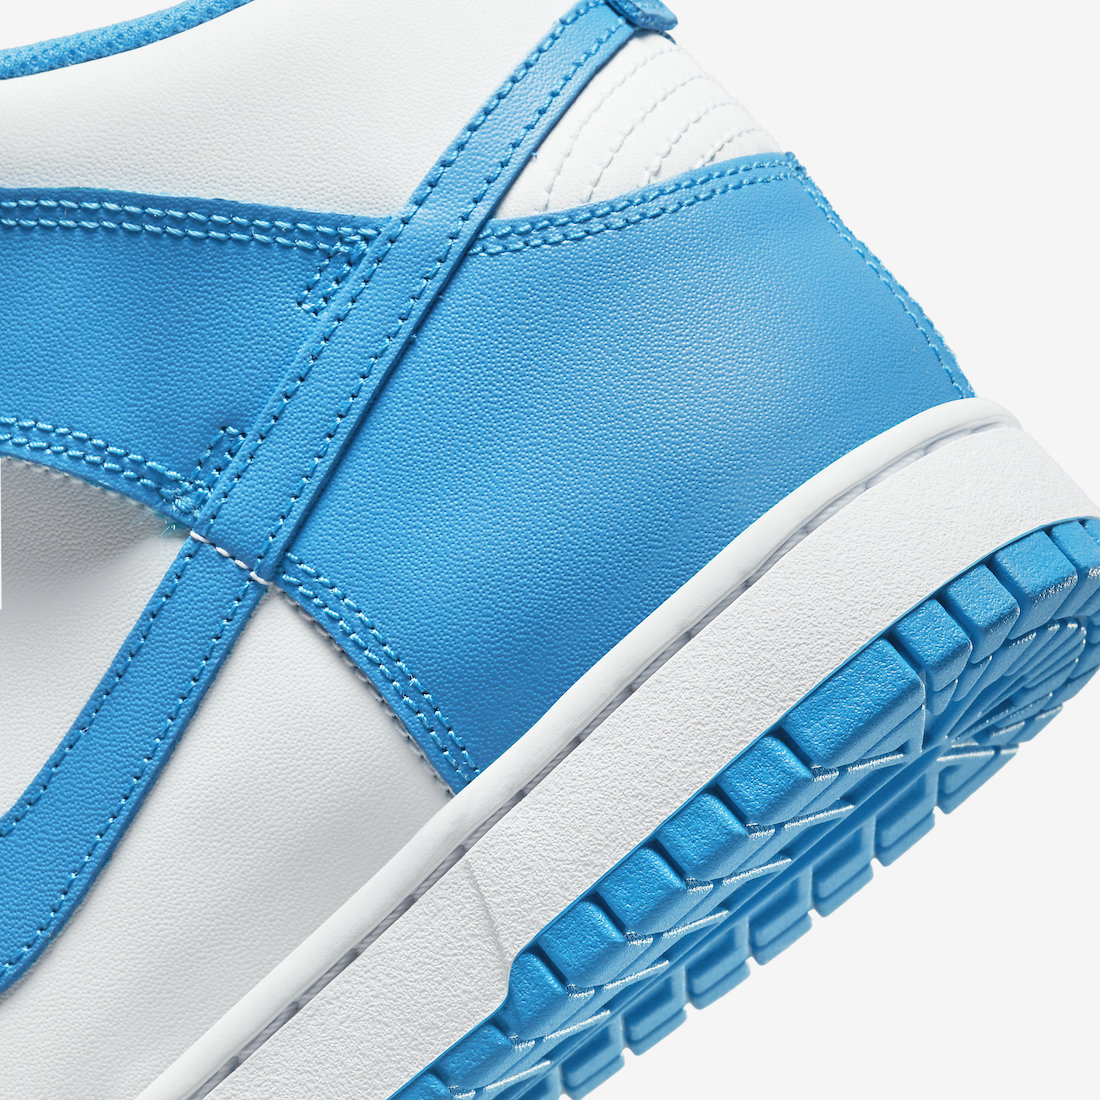 Release Date: Nike Dunk High 'Laser Blue' - Sneaker Freaker